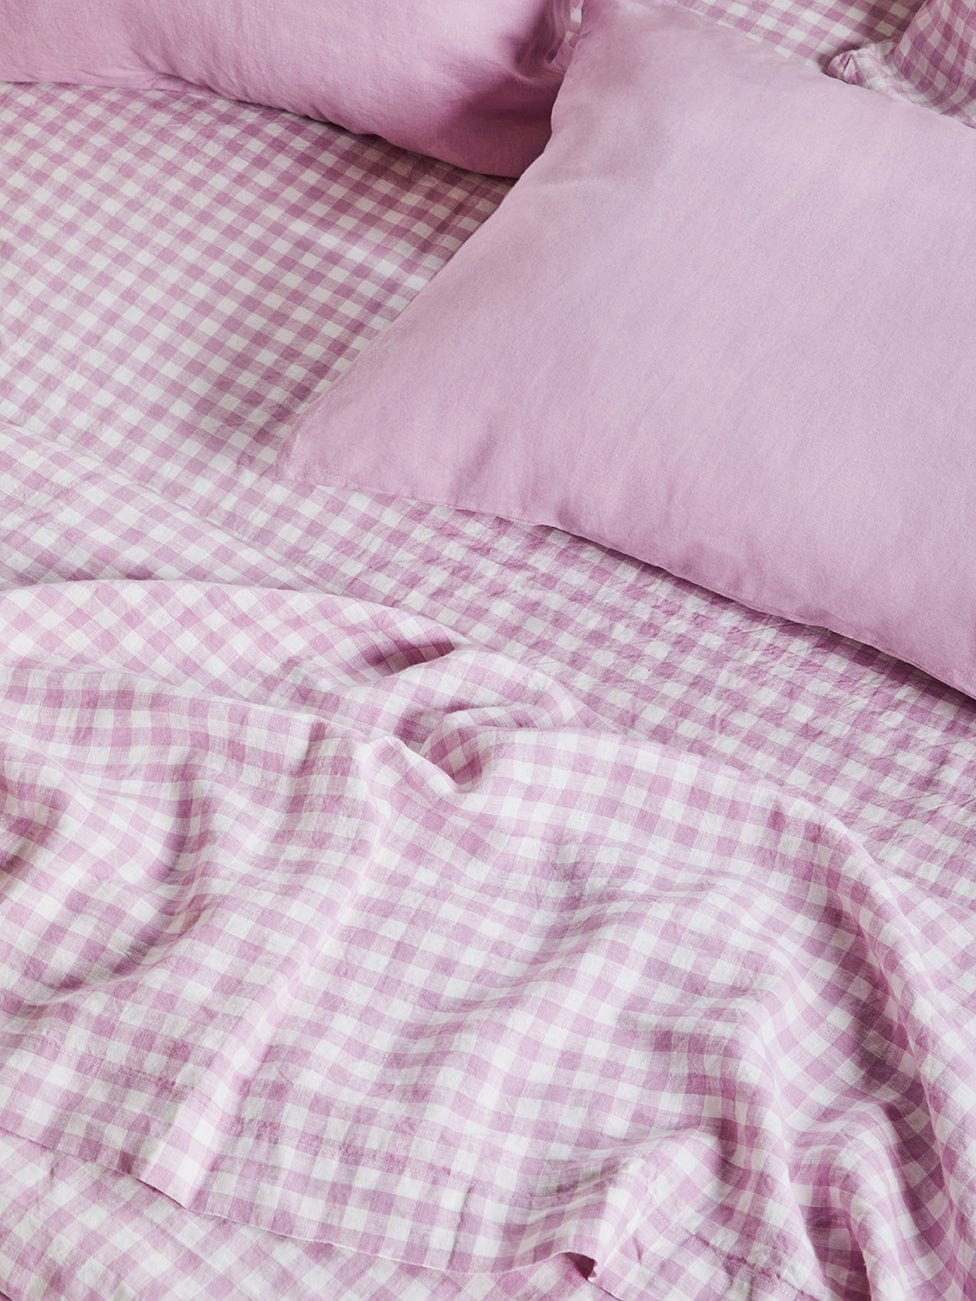 Lilac Gingham – Linen Flat Sheet